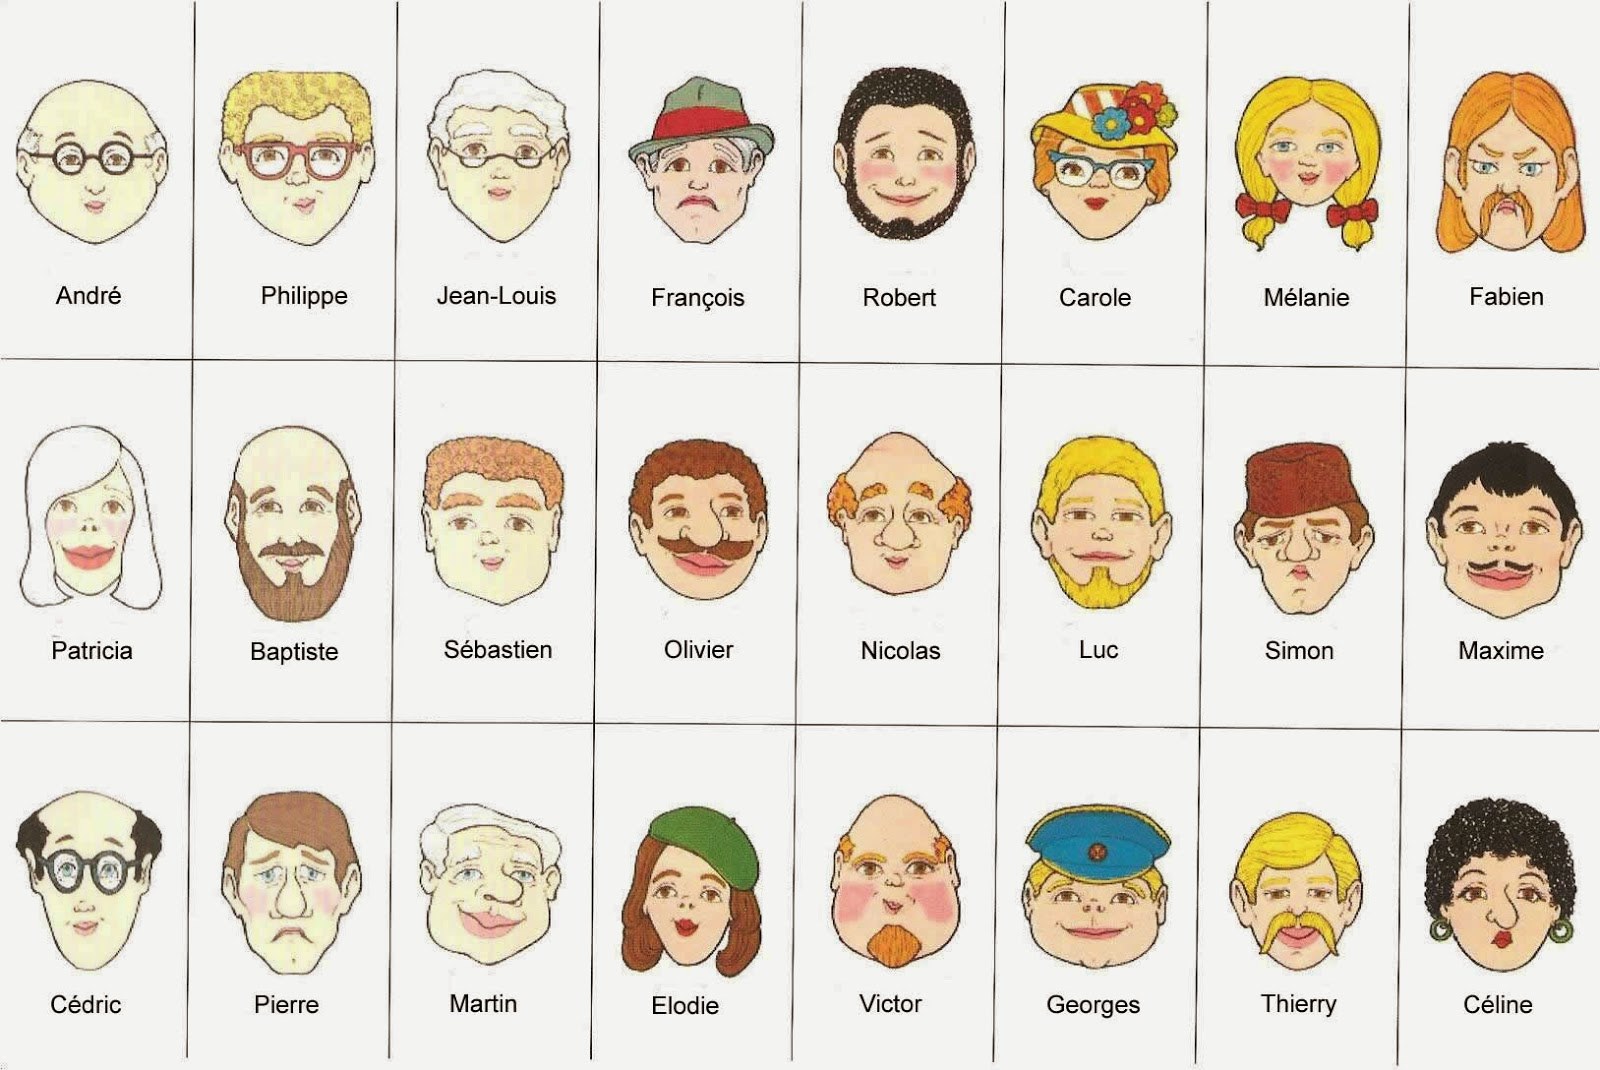 Картинки людей для описания внешности на английском языке